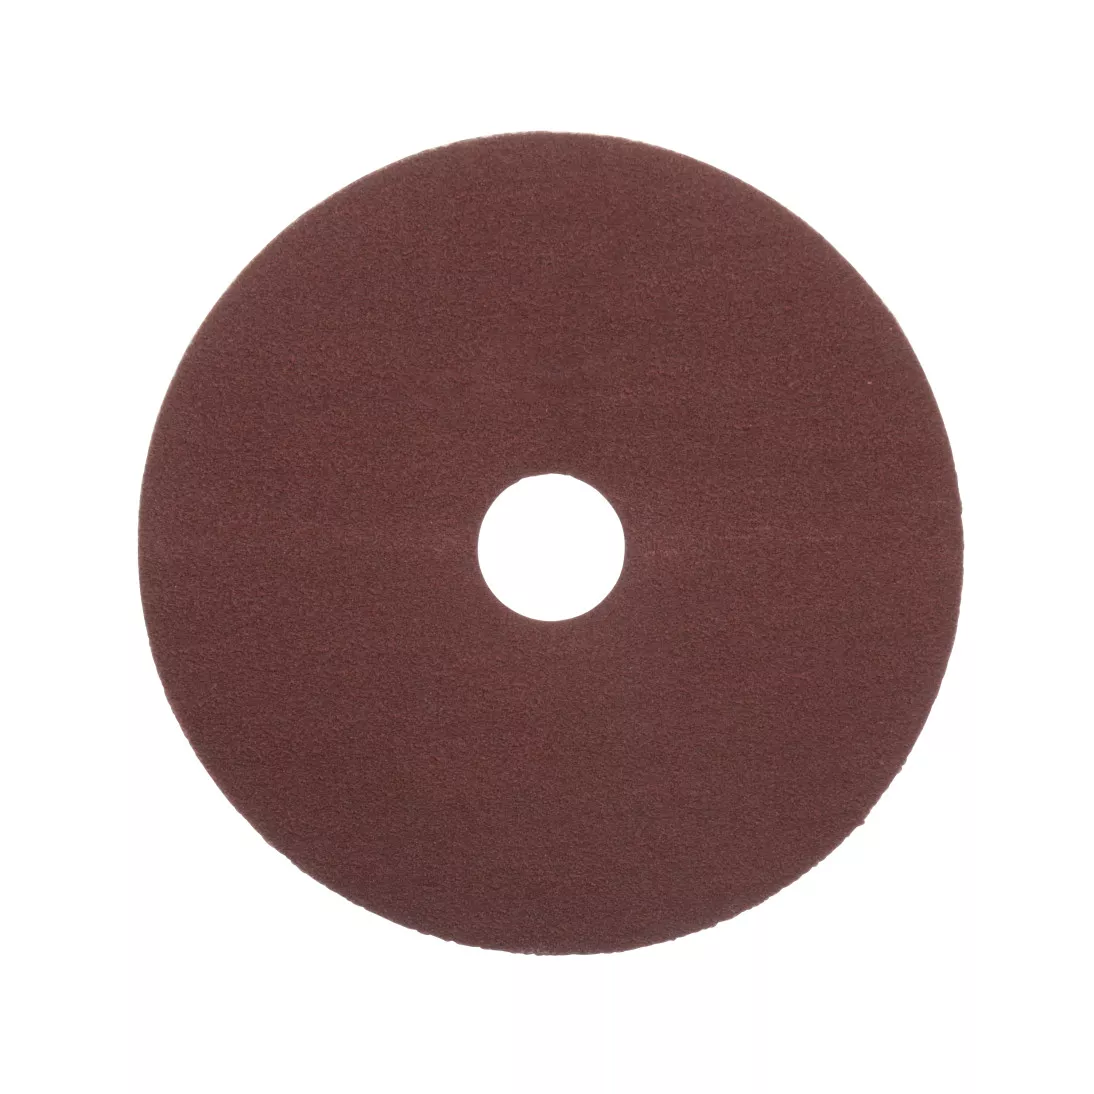 Standard Abrasives™ A/O Resin Fiber Disc, 530108, 5 in x 7/8 in 120, 25
per inner 100 per case